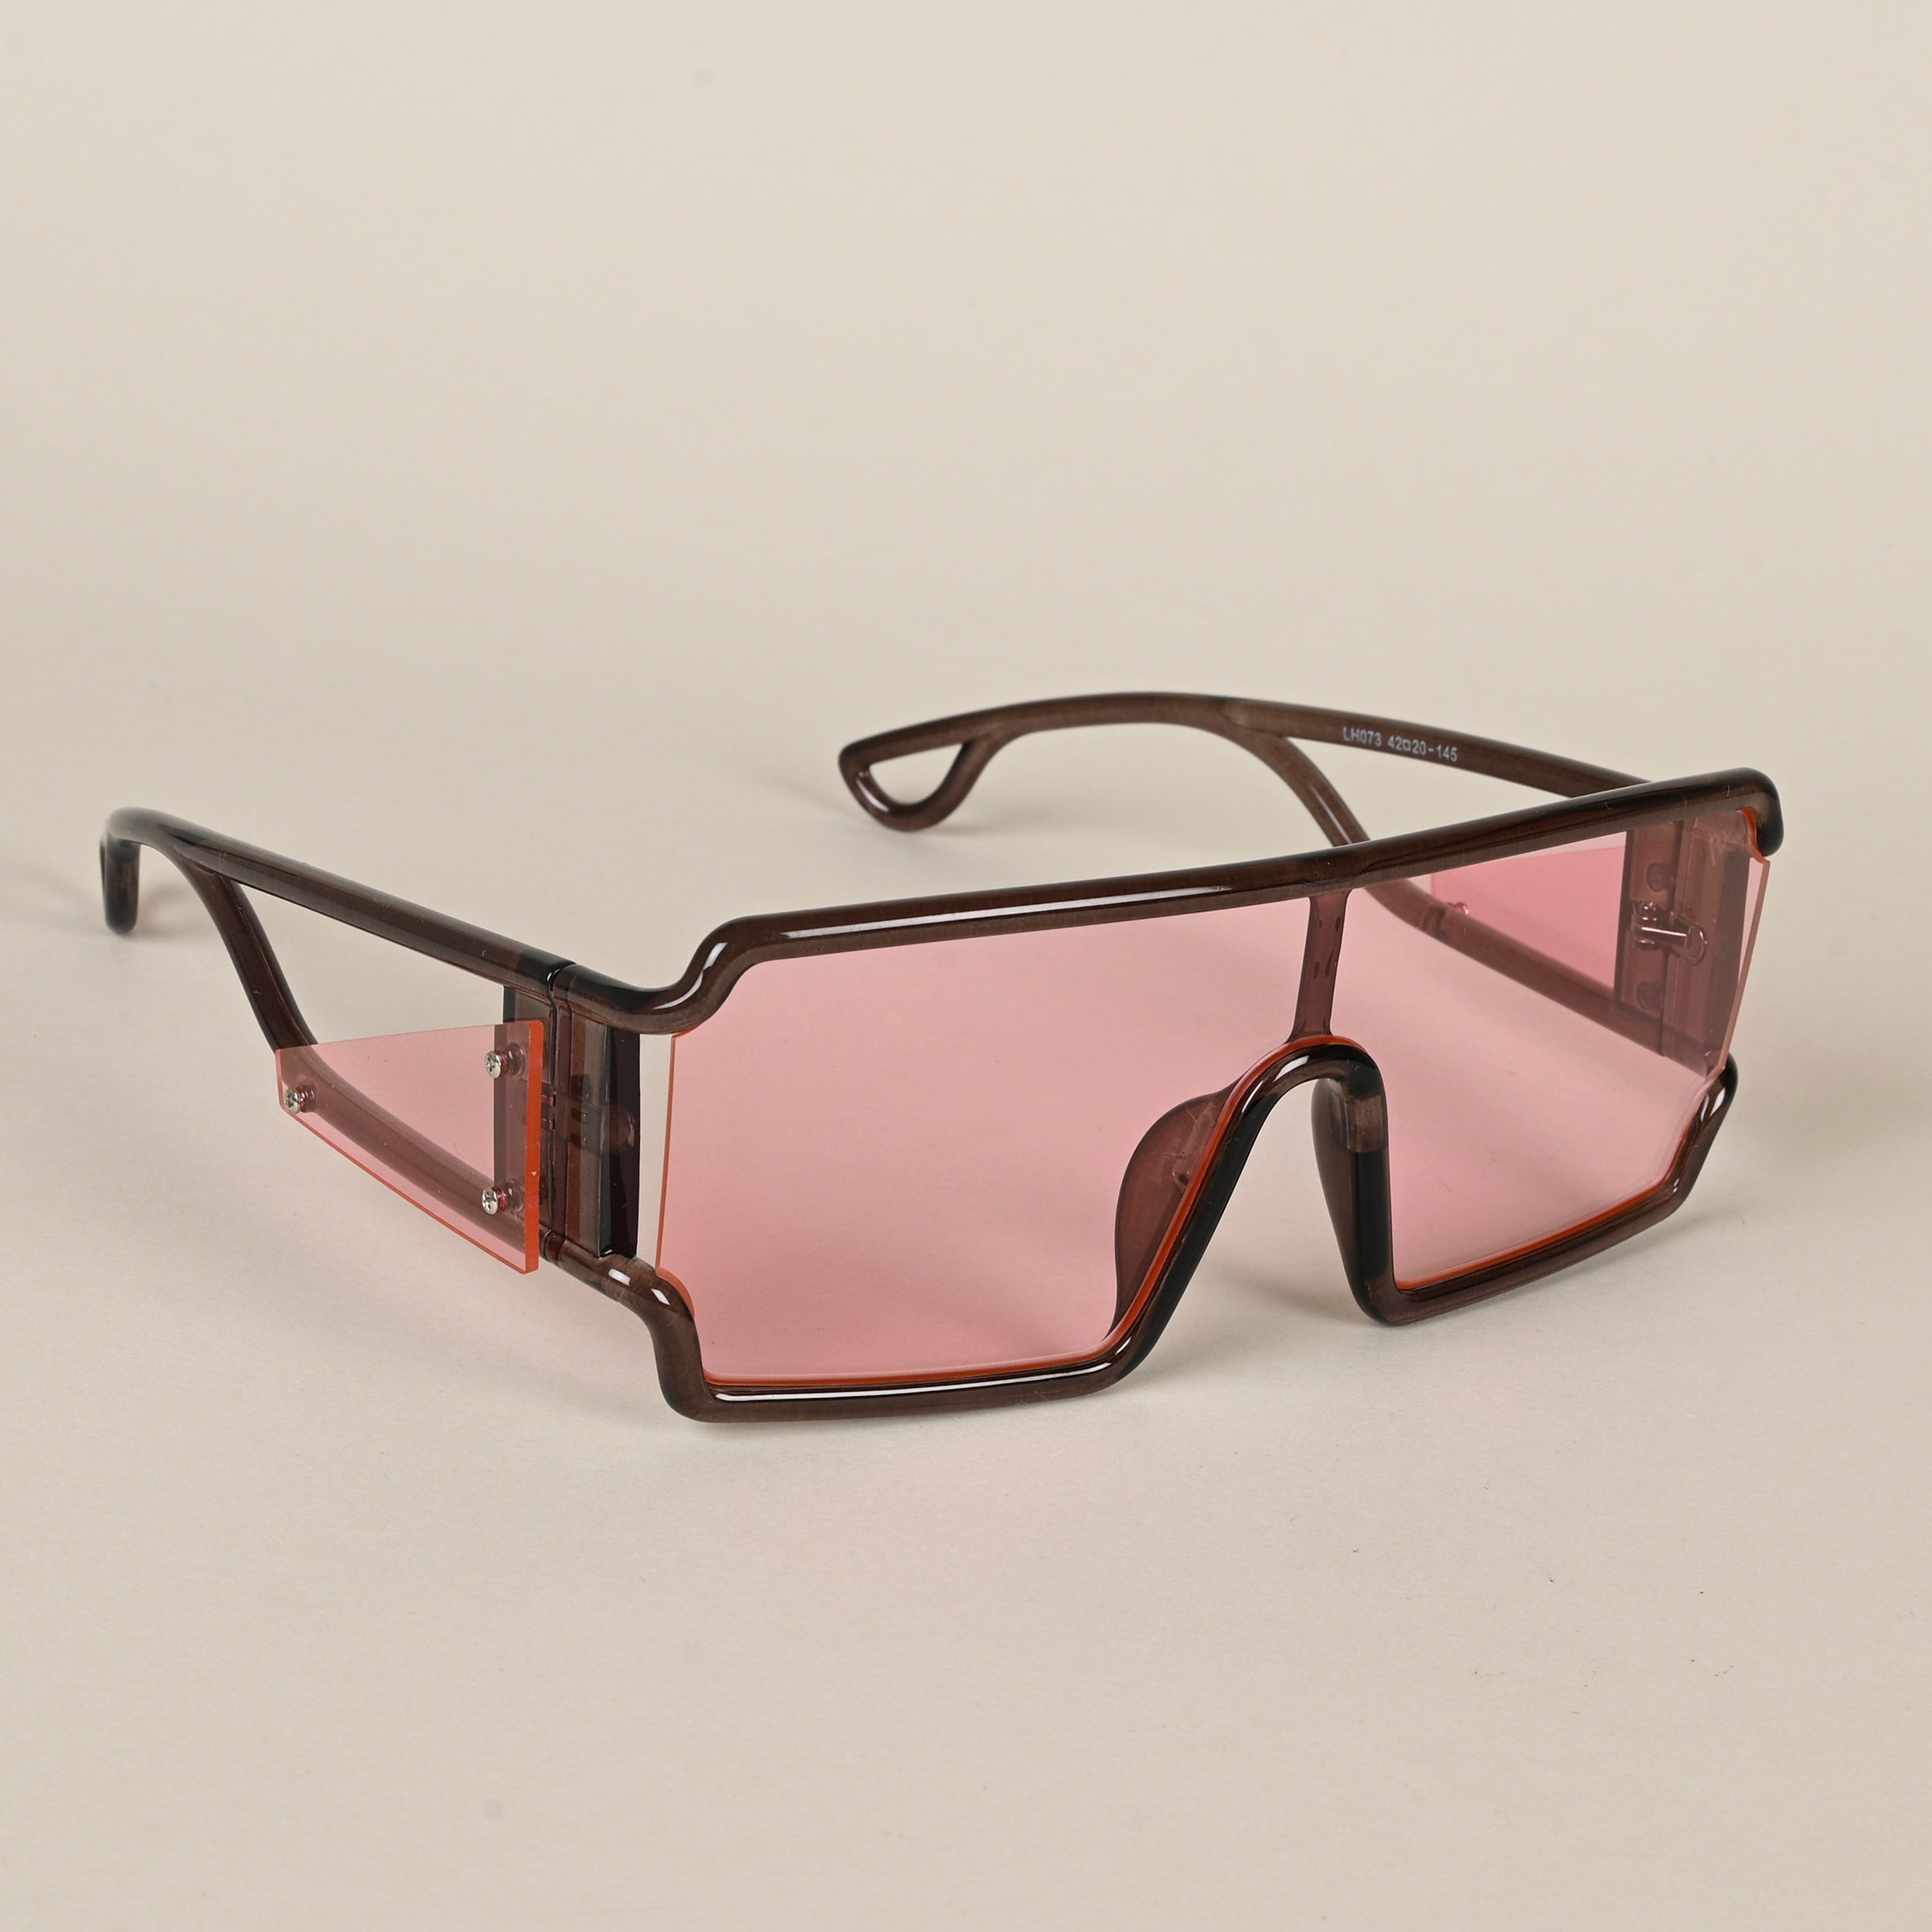 Voyage Hazel Wayfarer Sunglasses for Men & Women - MG4560